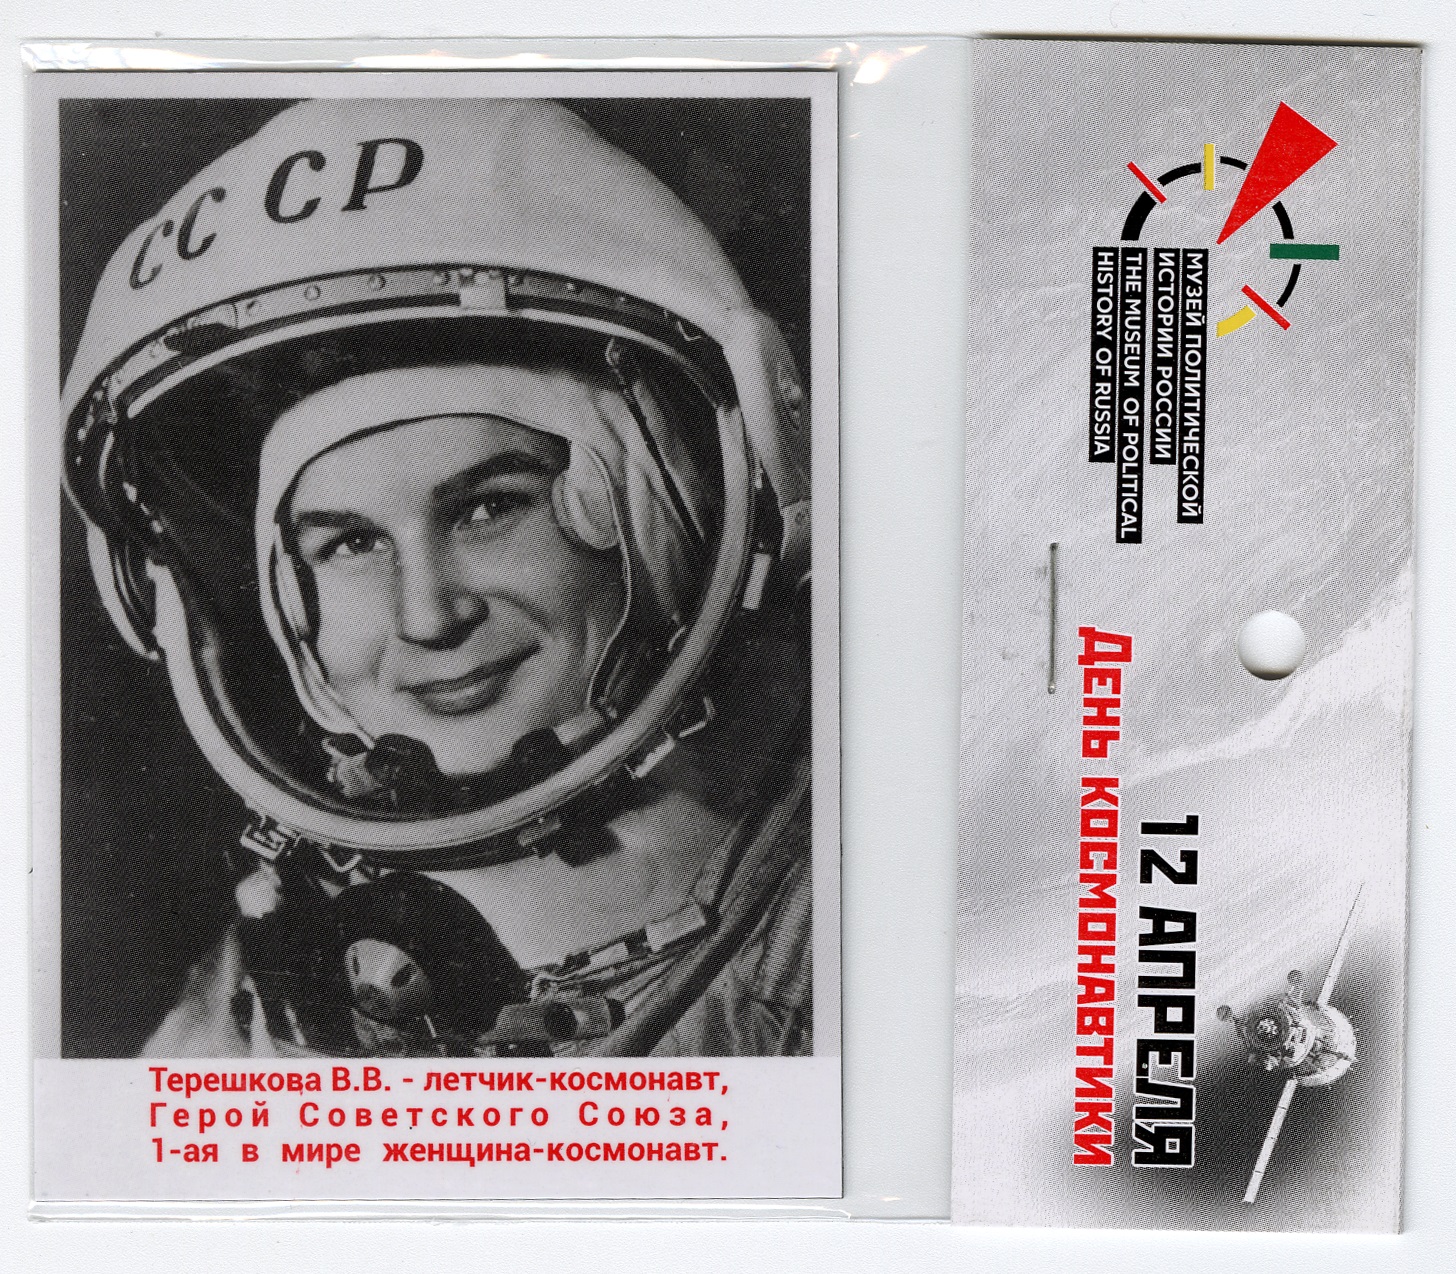 «V.V. Tereshkova - the first lady cosmonaut»